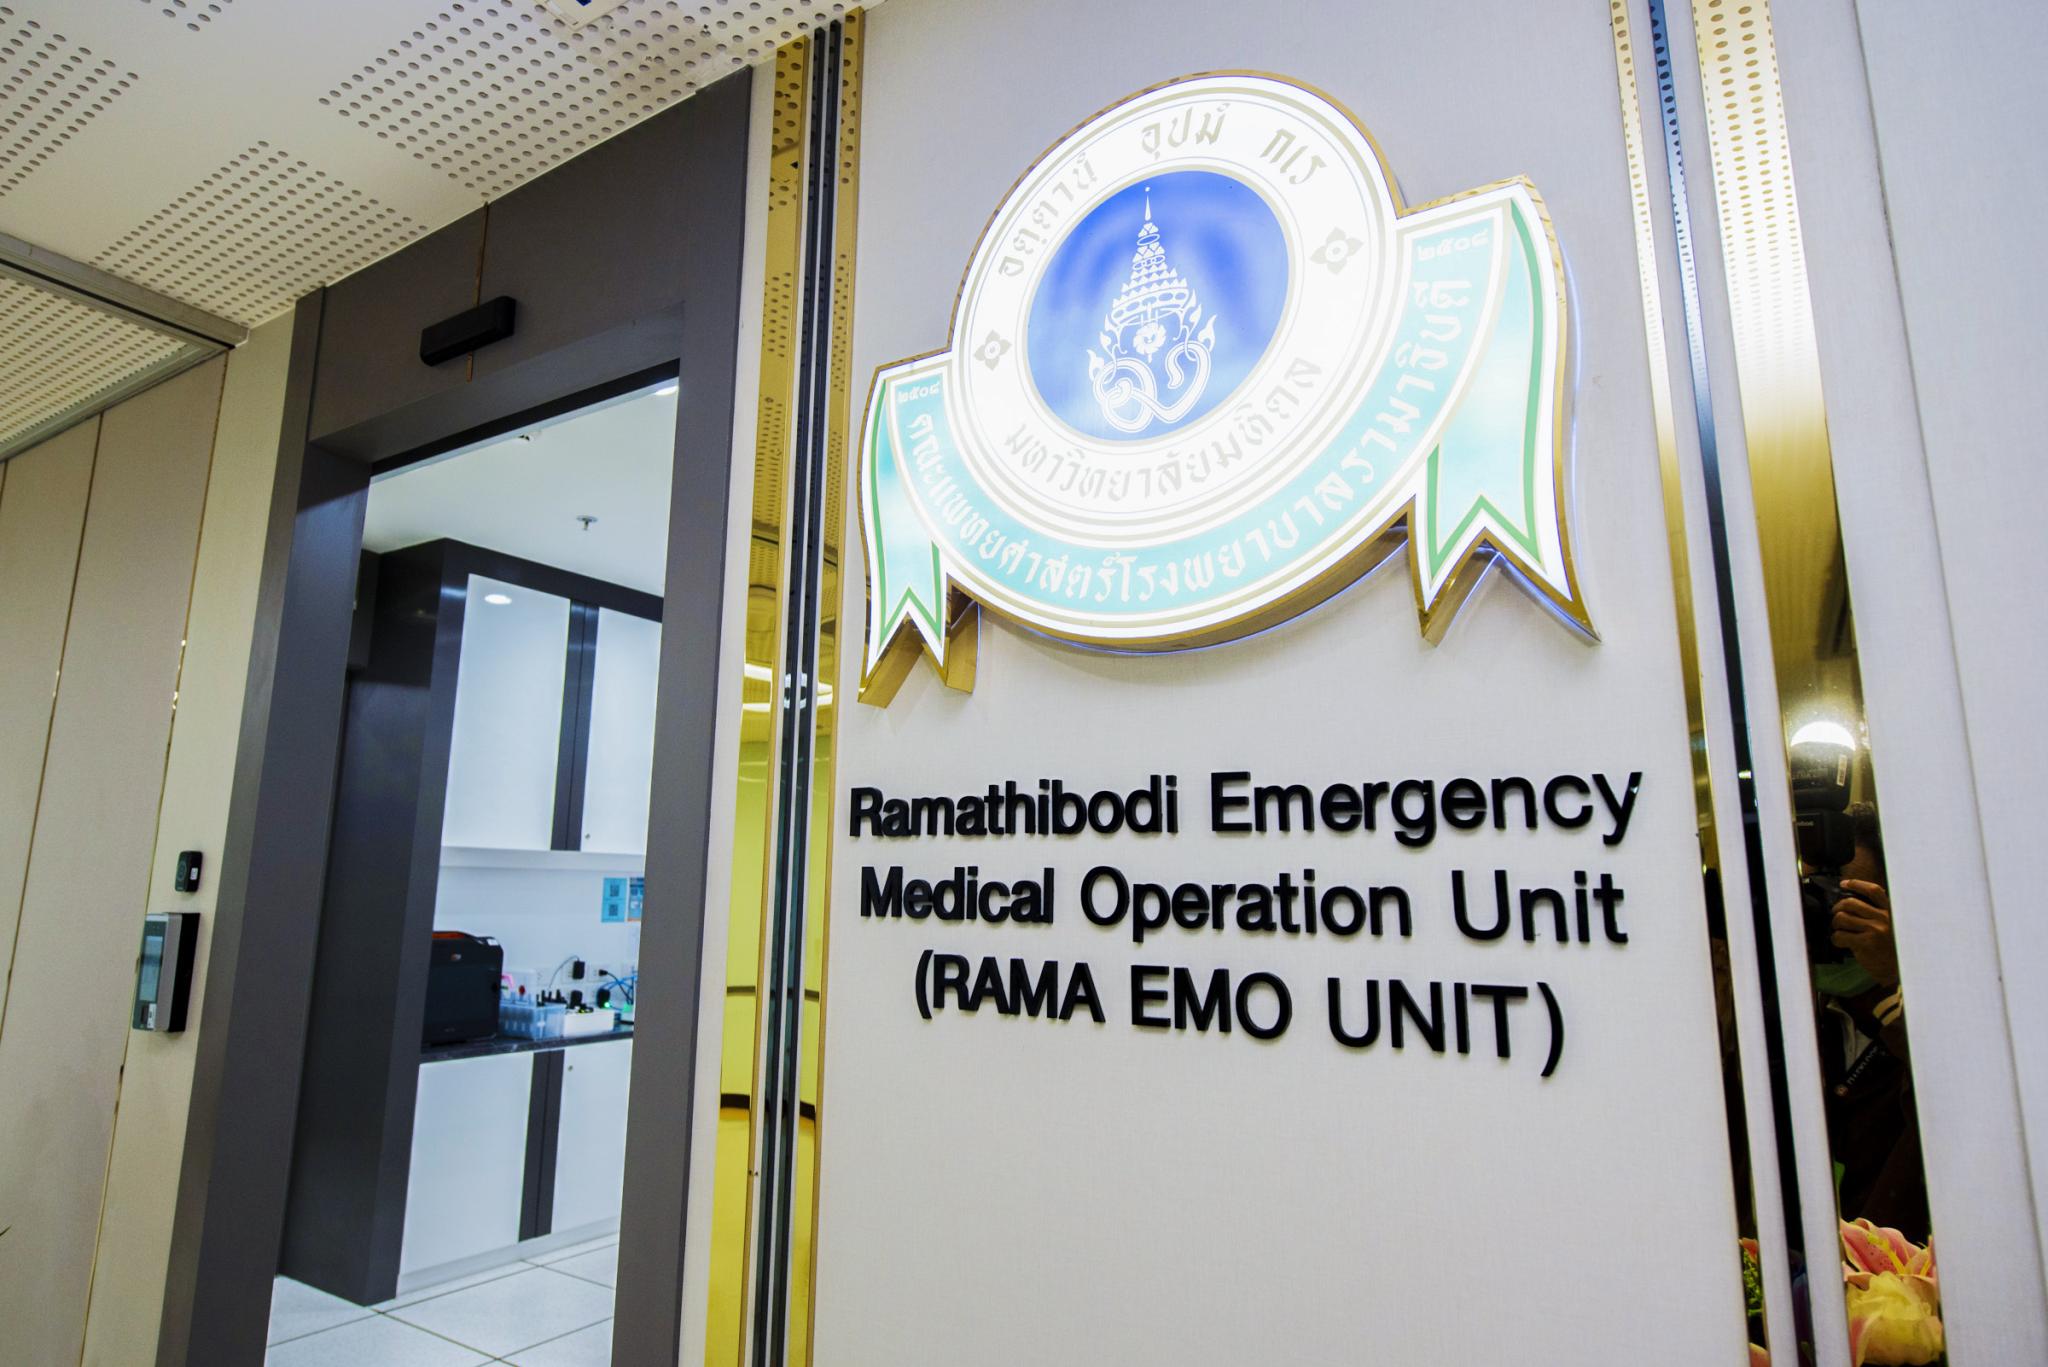 พิธีเปิดหน่วยปฏิบัติการฉุกเฉินการแพทย์ RAMA EMO: Ramathibodi Emergency Medical Operation Unit